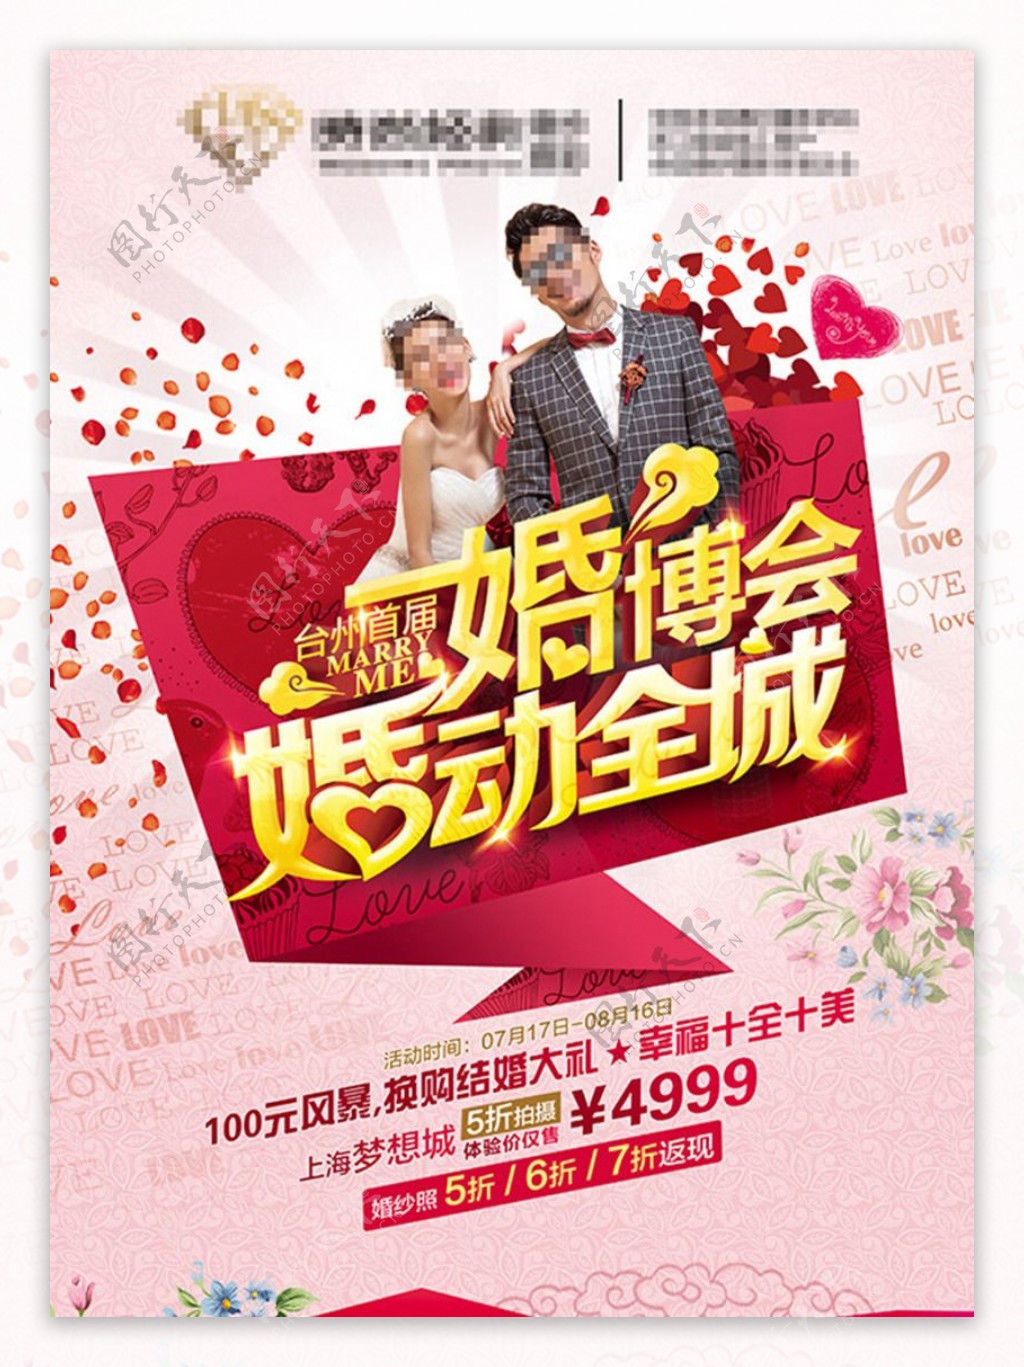 婚博会广告宣传海报设计PSD素材